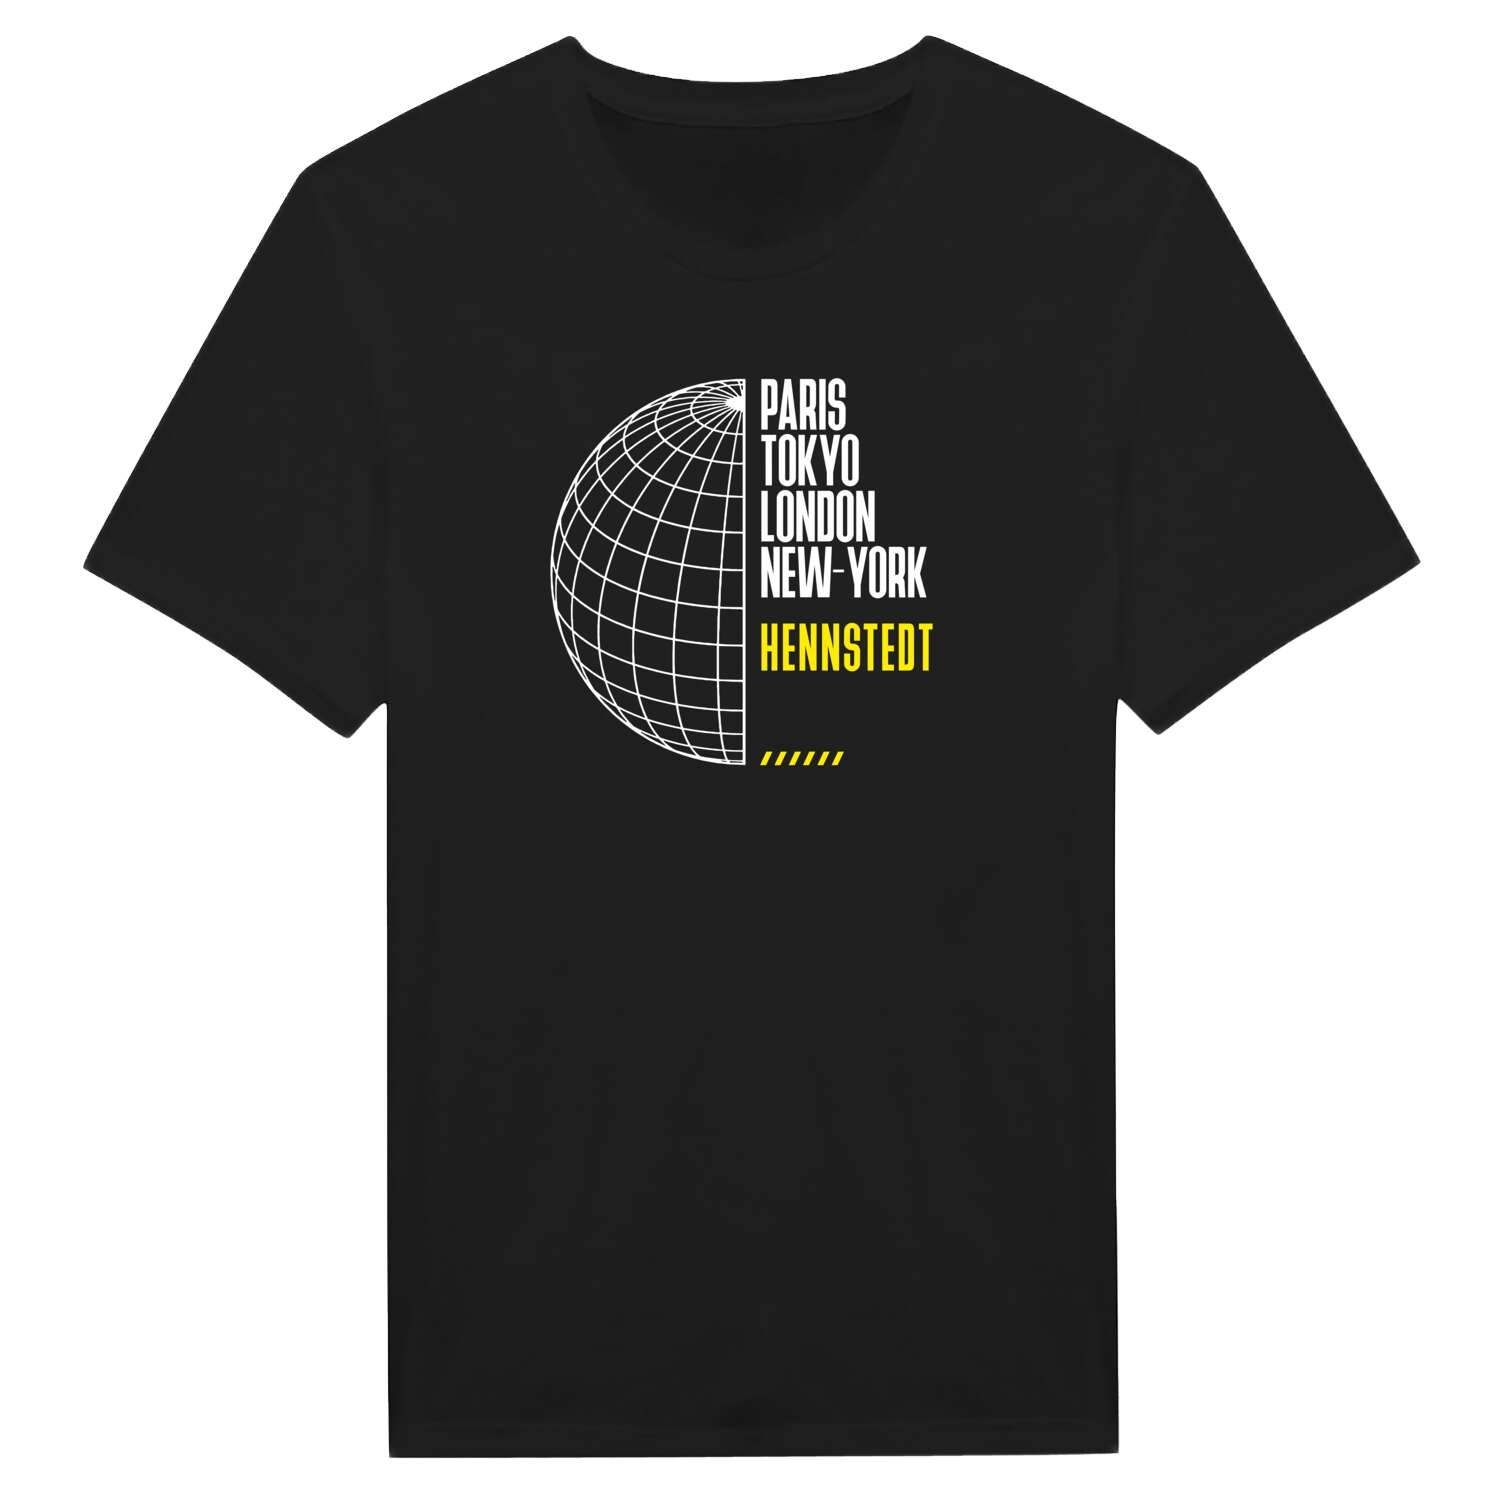 Hennstedt T-Shirt »Paris Tokyo London«